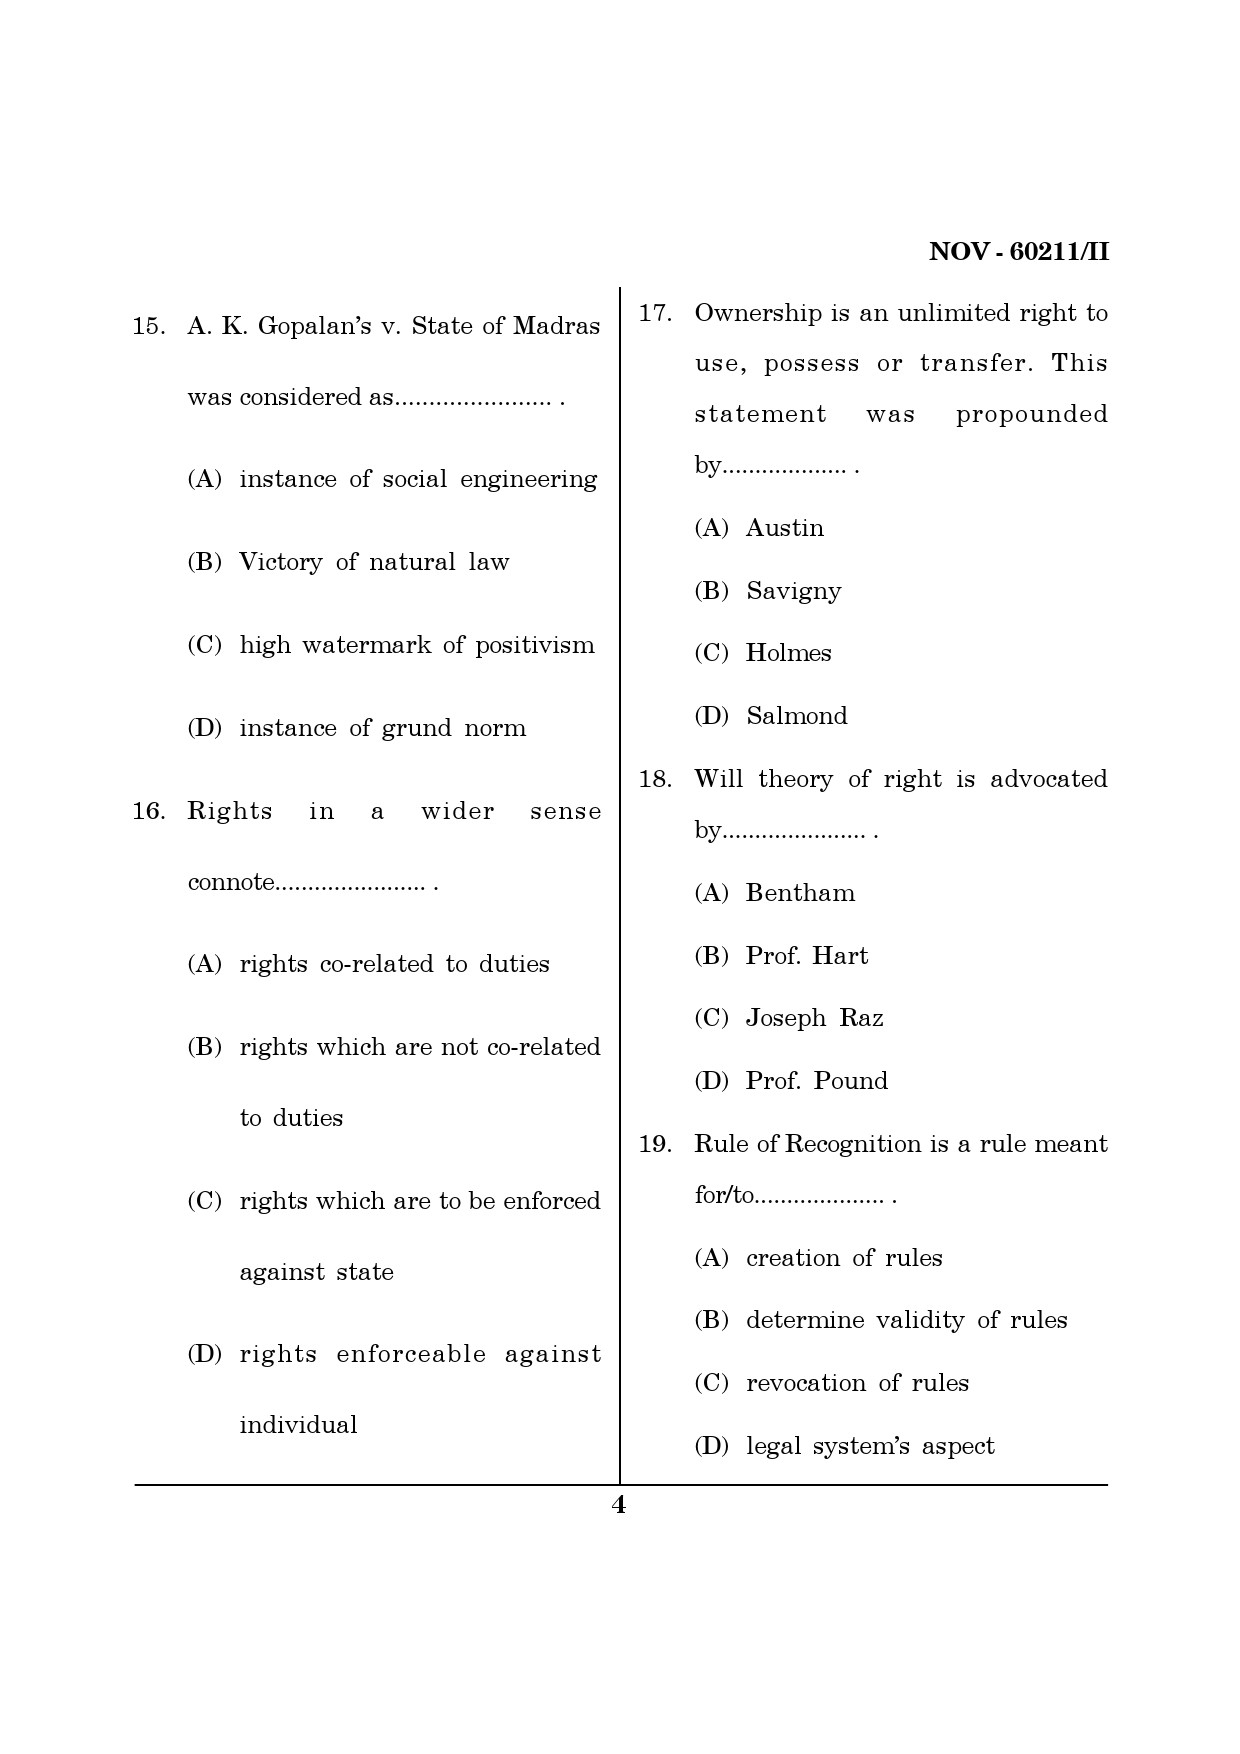 Maharashtra SET Law Question Paper II November 2011 4